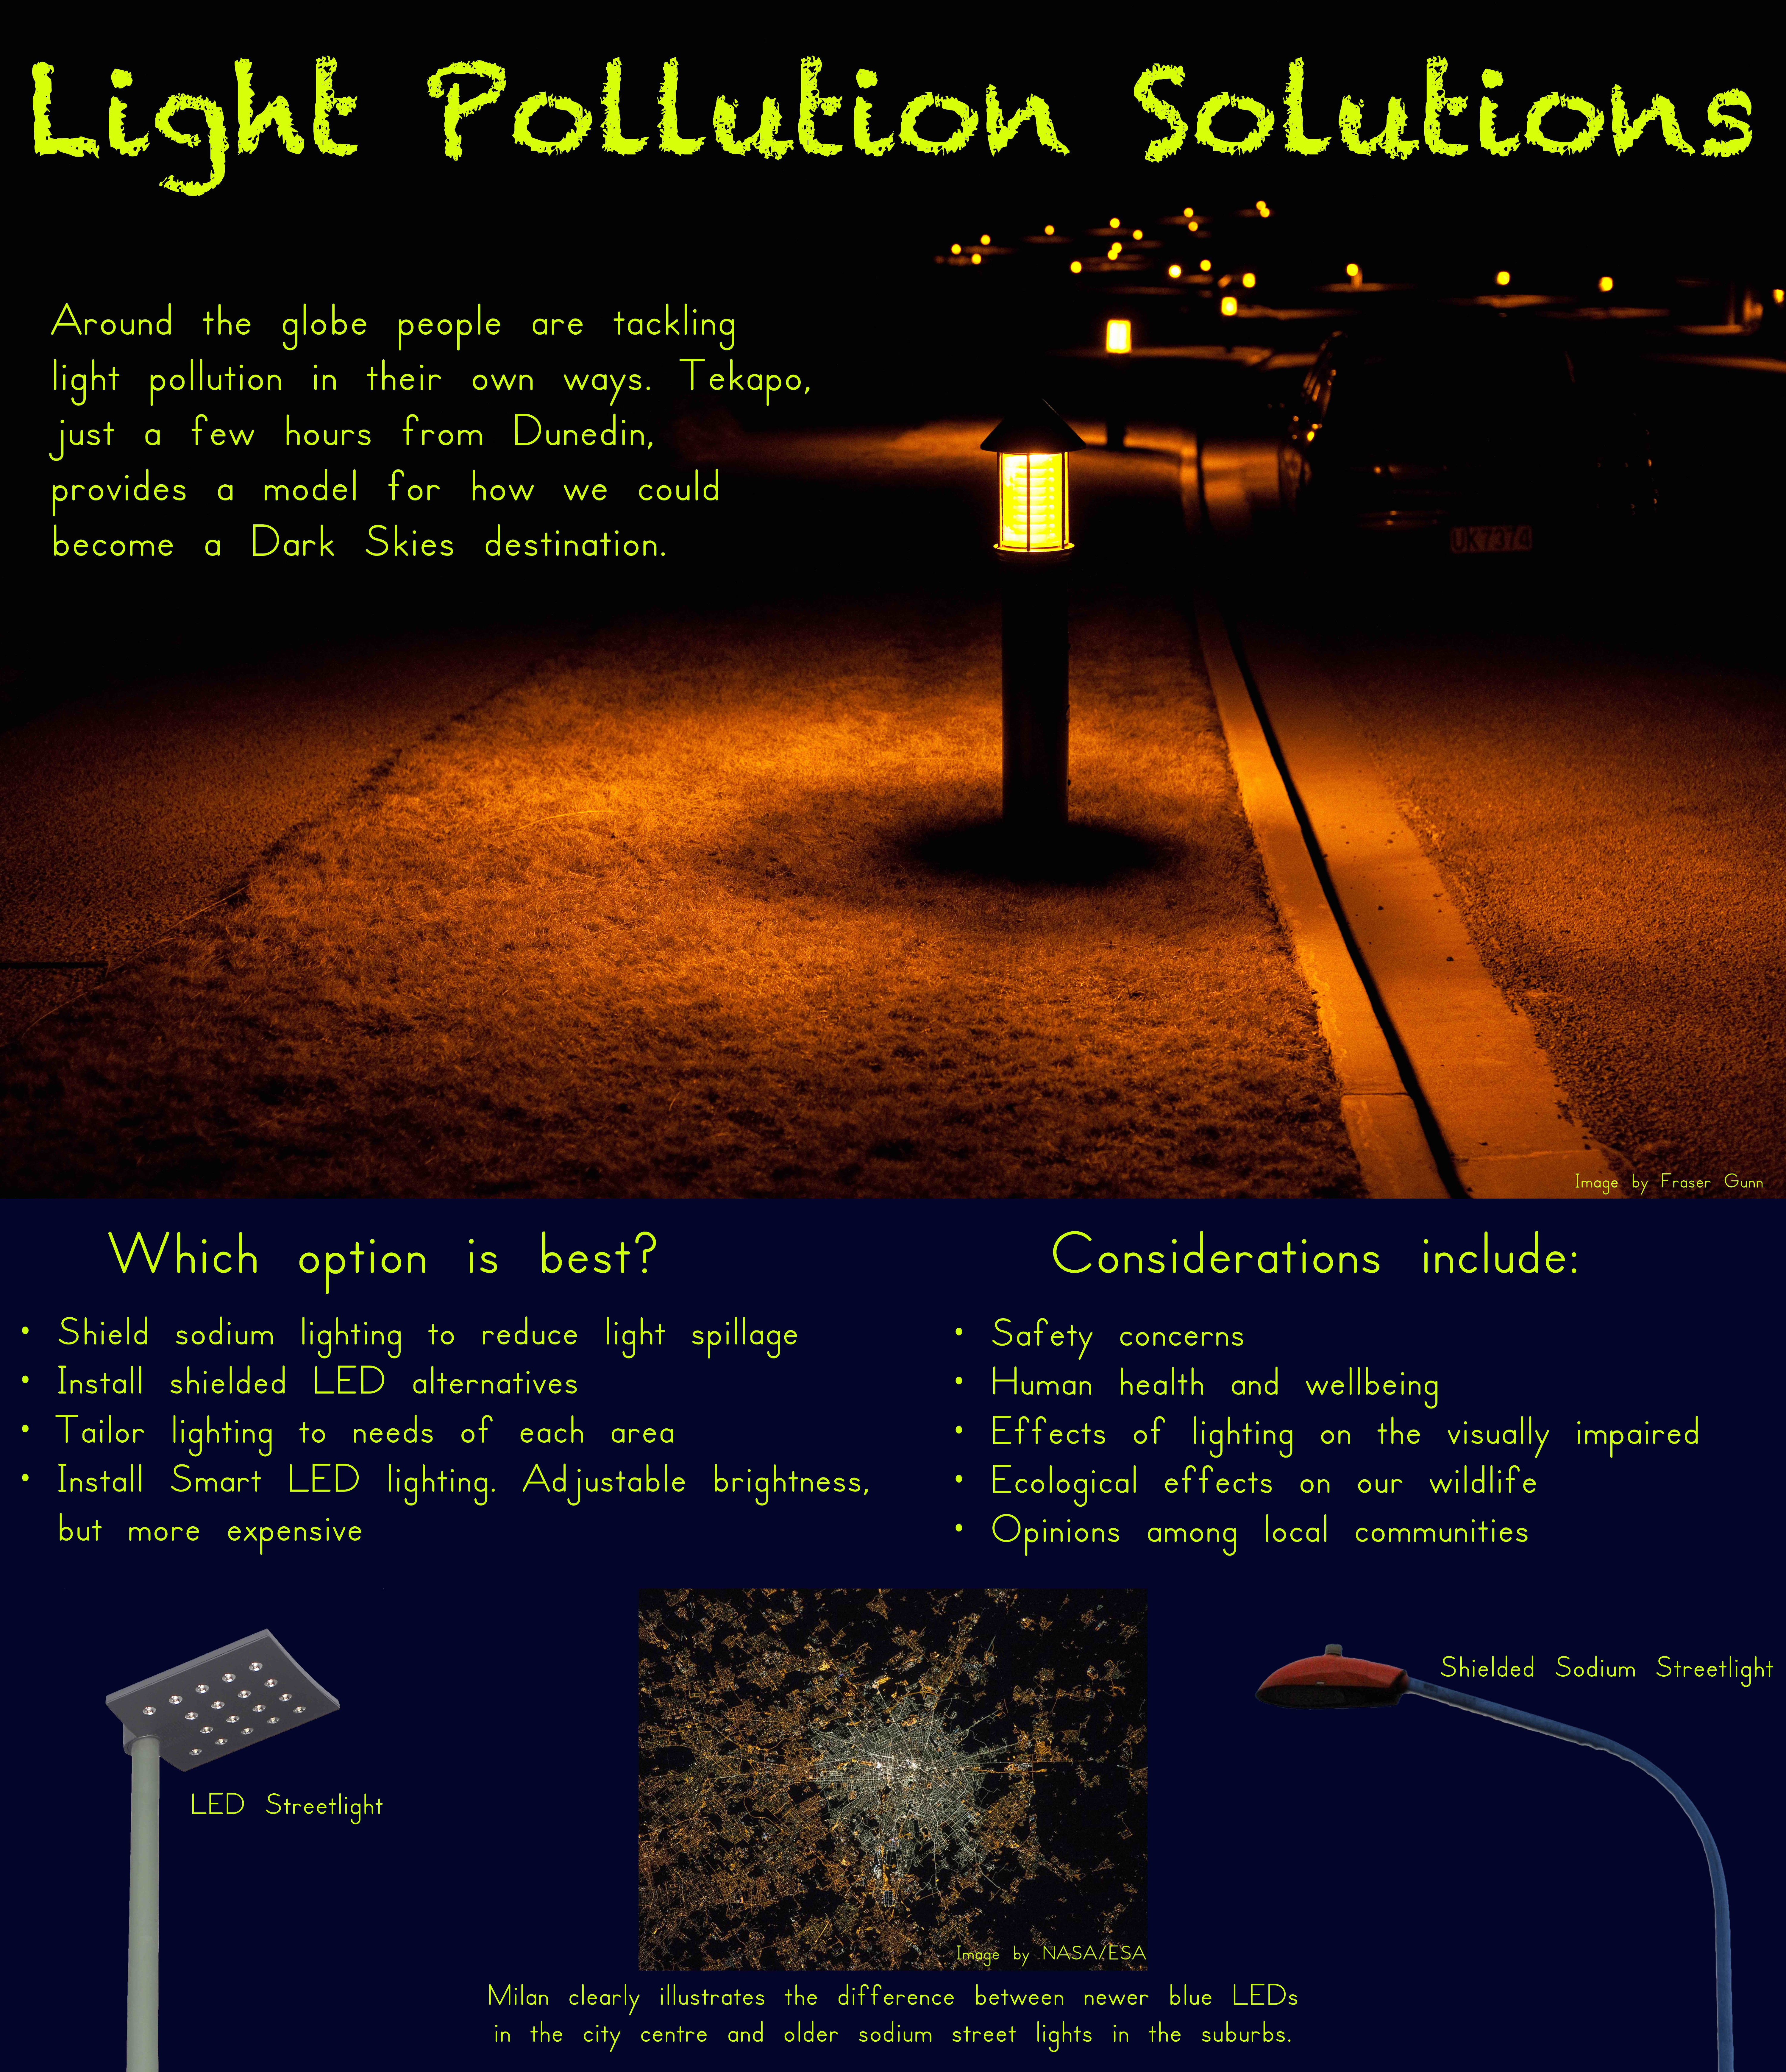 Light pollution solutions